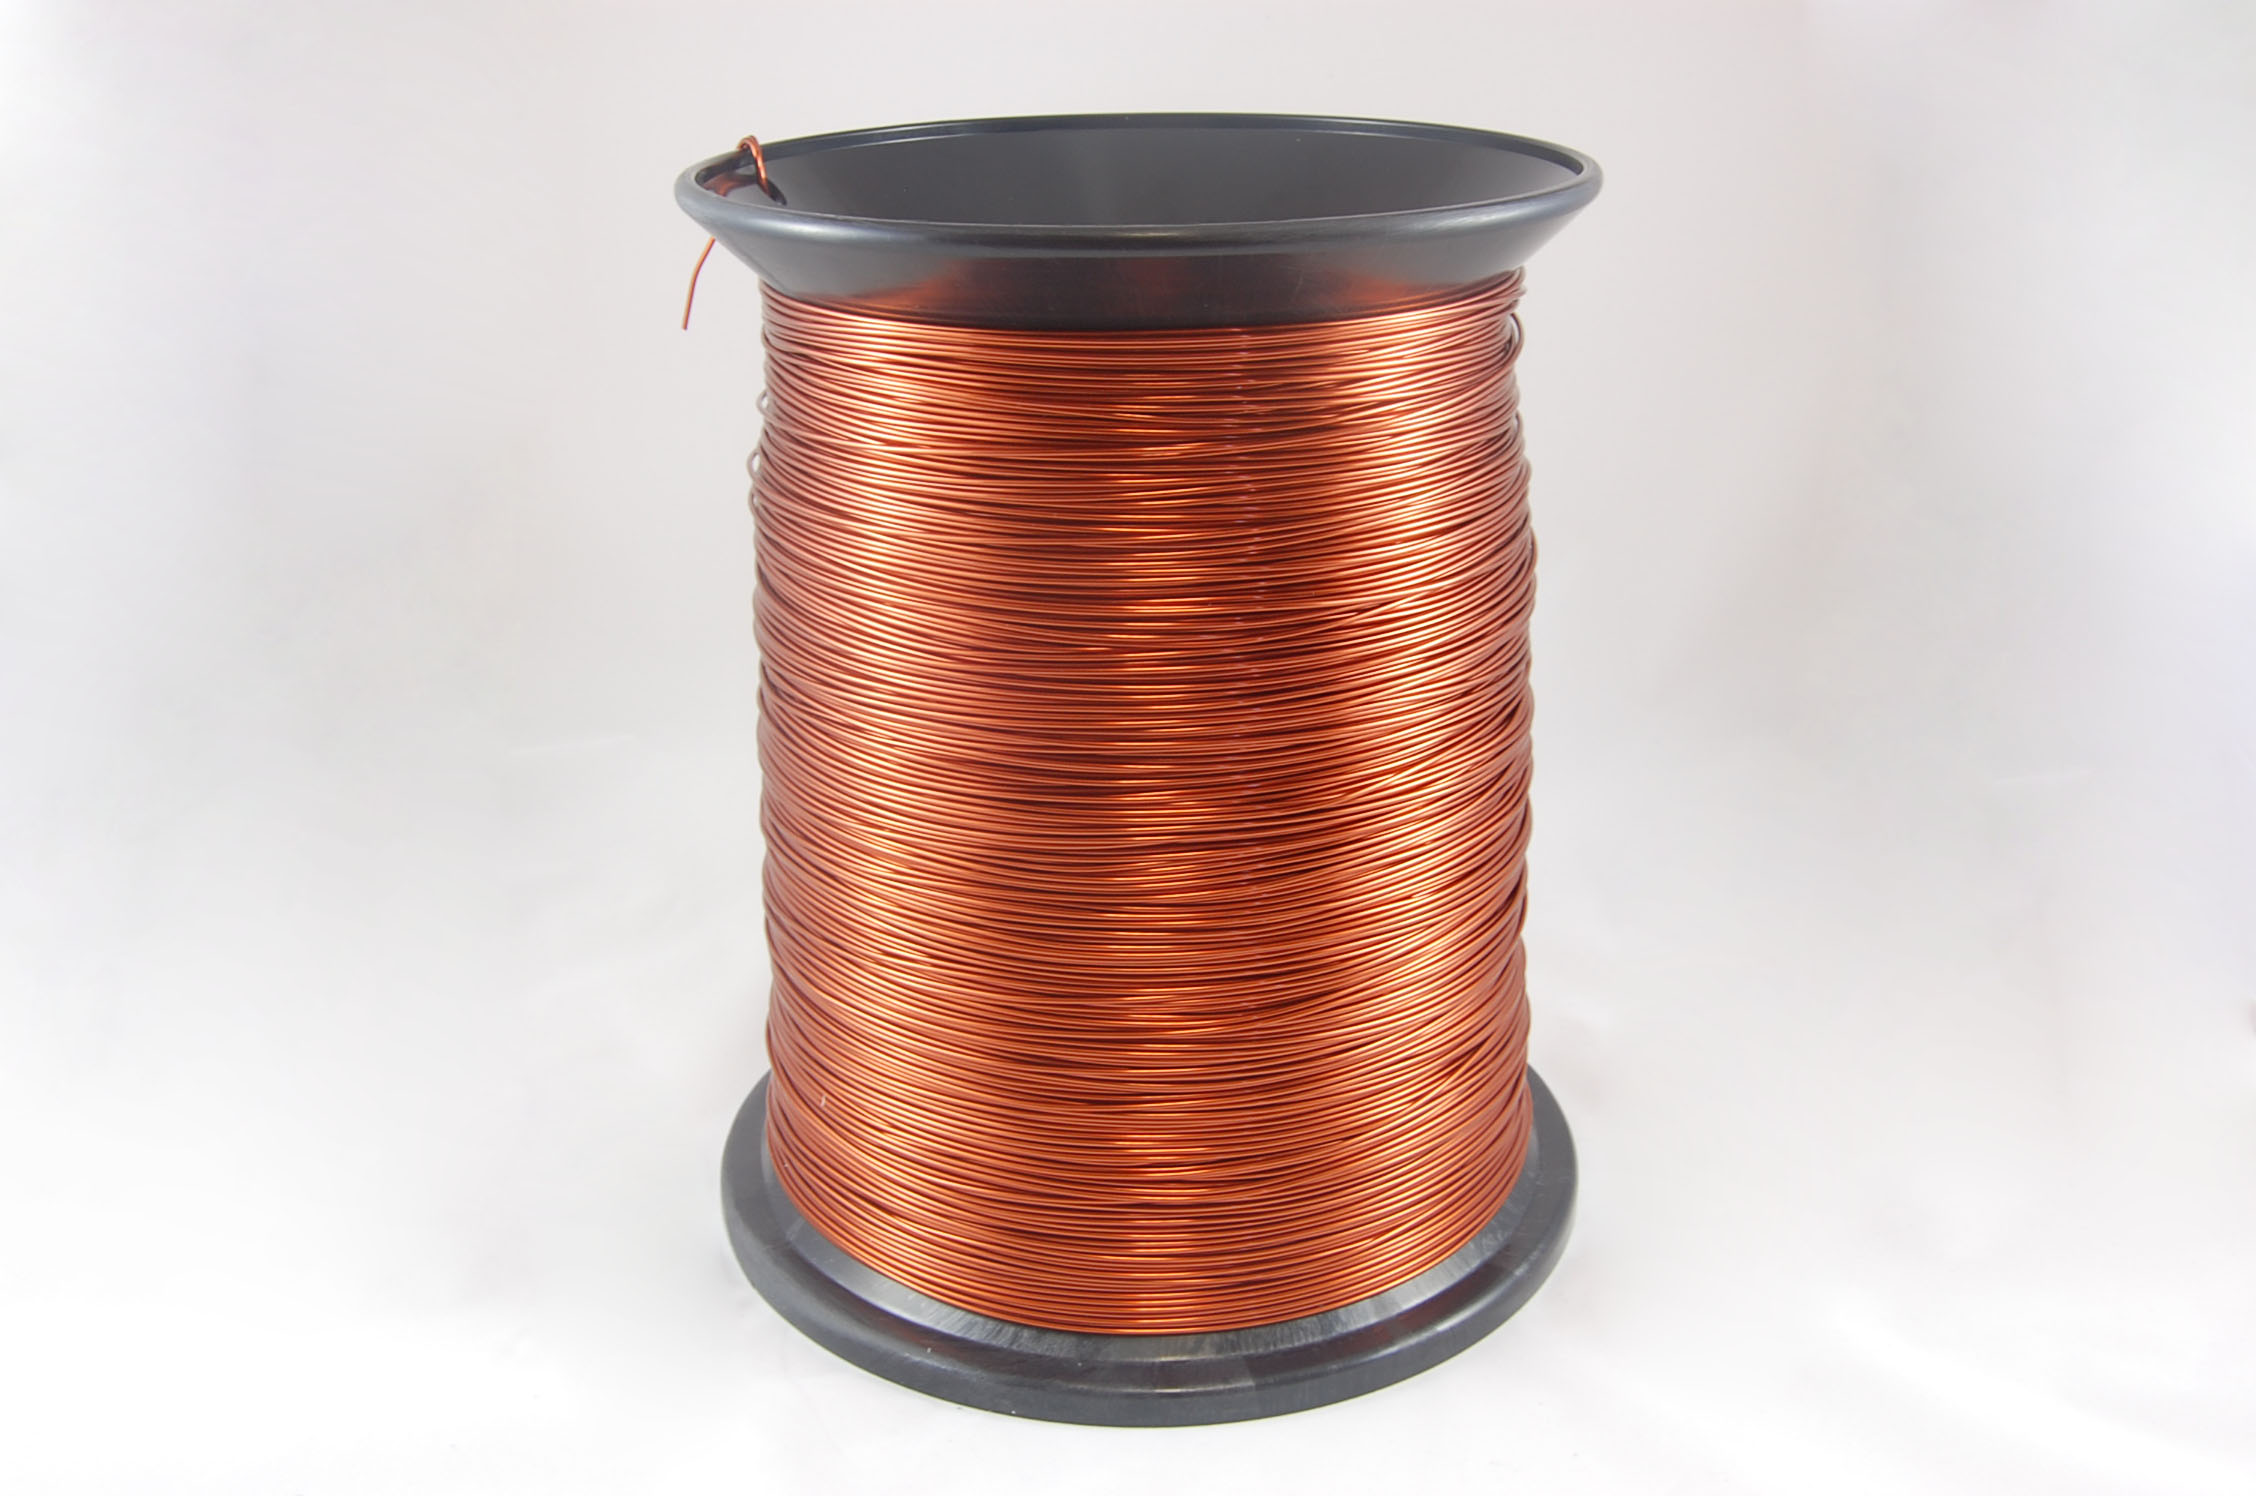 #16 Heavy GP/MR-200 Round MW 35 Copper Magnet Wire 200°C, copper, 85 LB pail (average wght.)